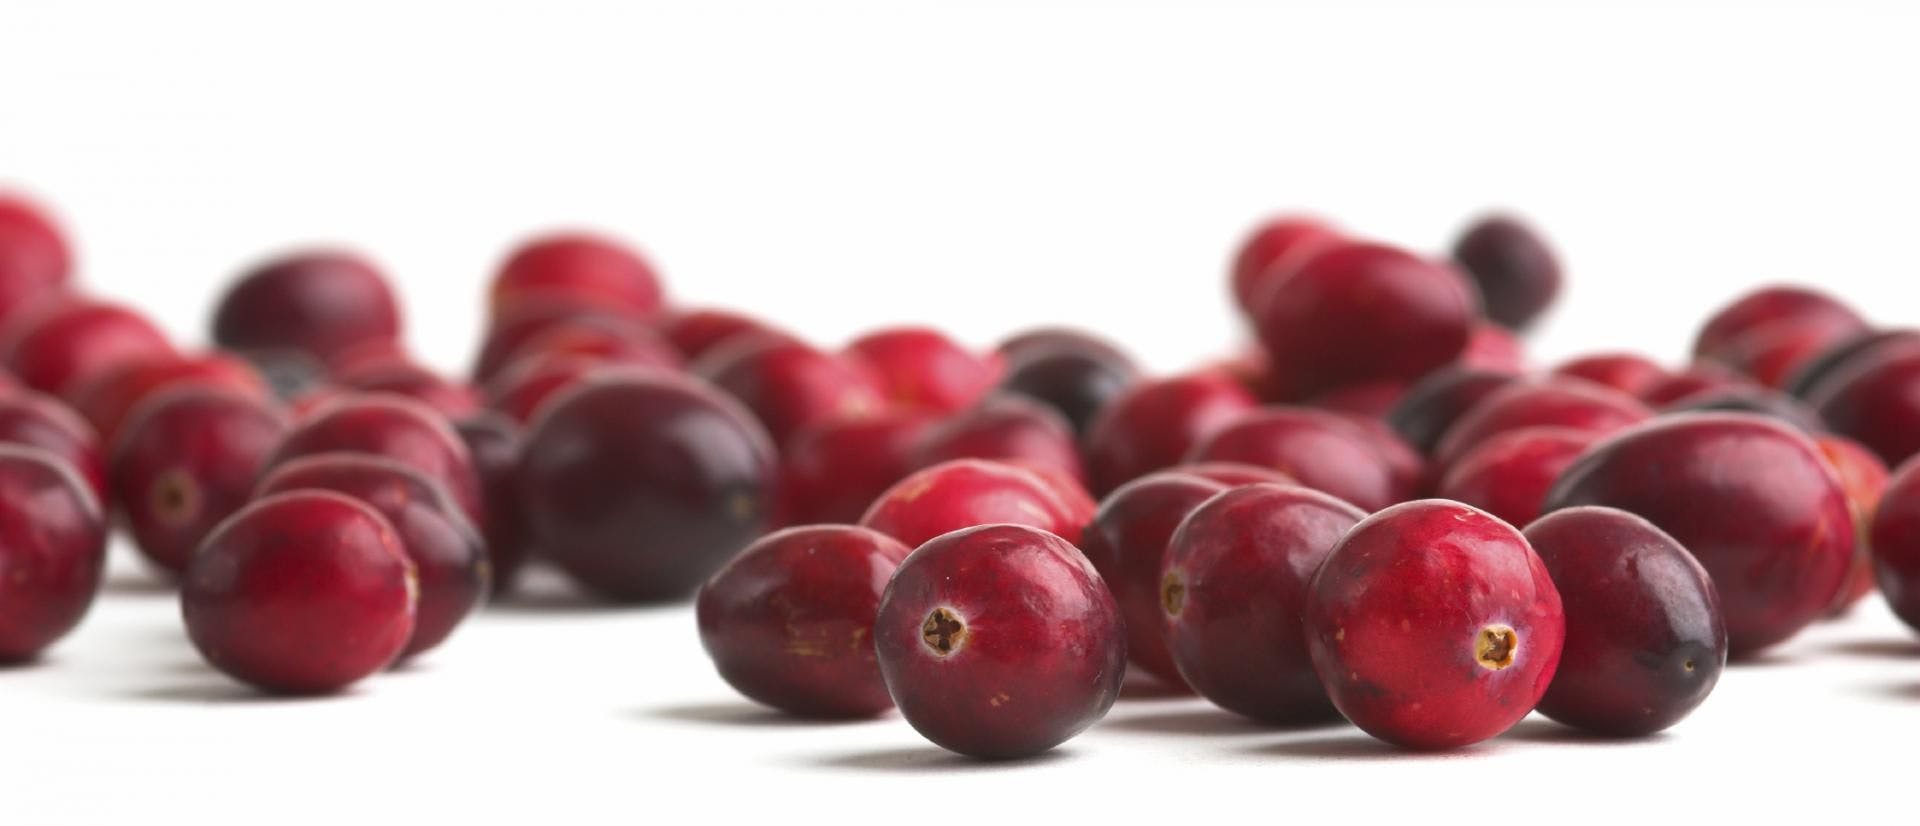 MALDI-TOF Test Method Enhances Cranberry Authentication, Fruit d’Or Says